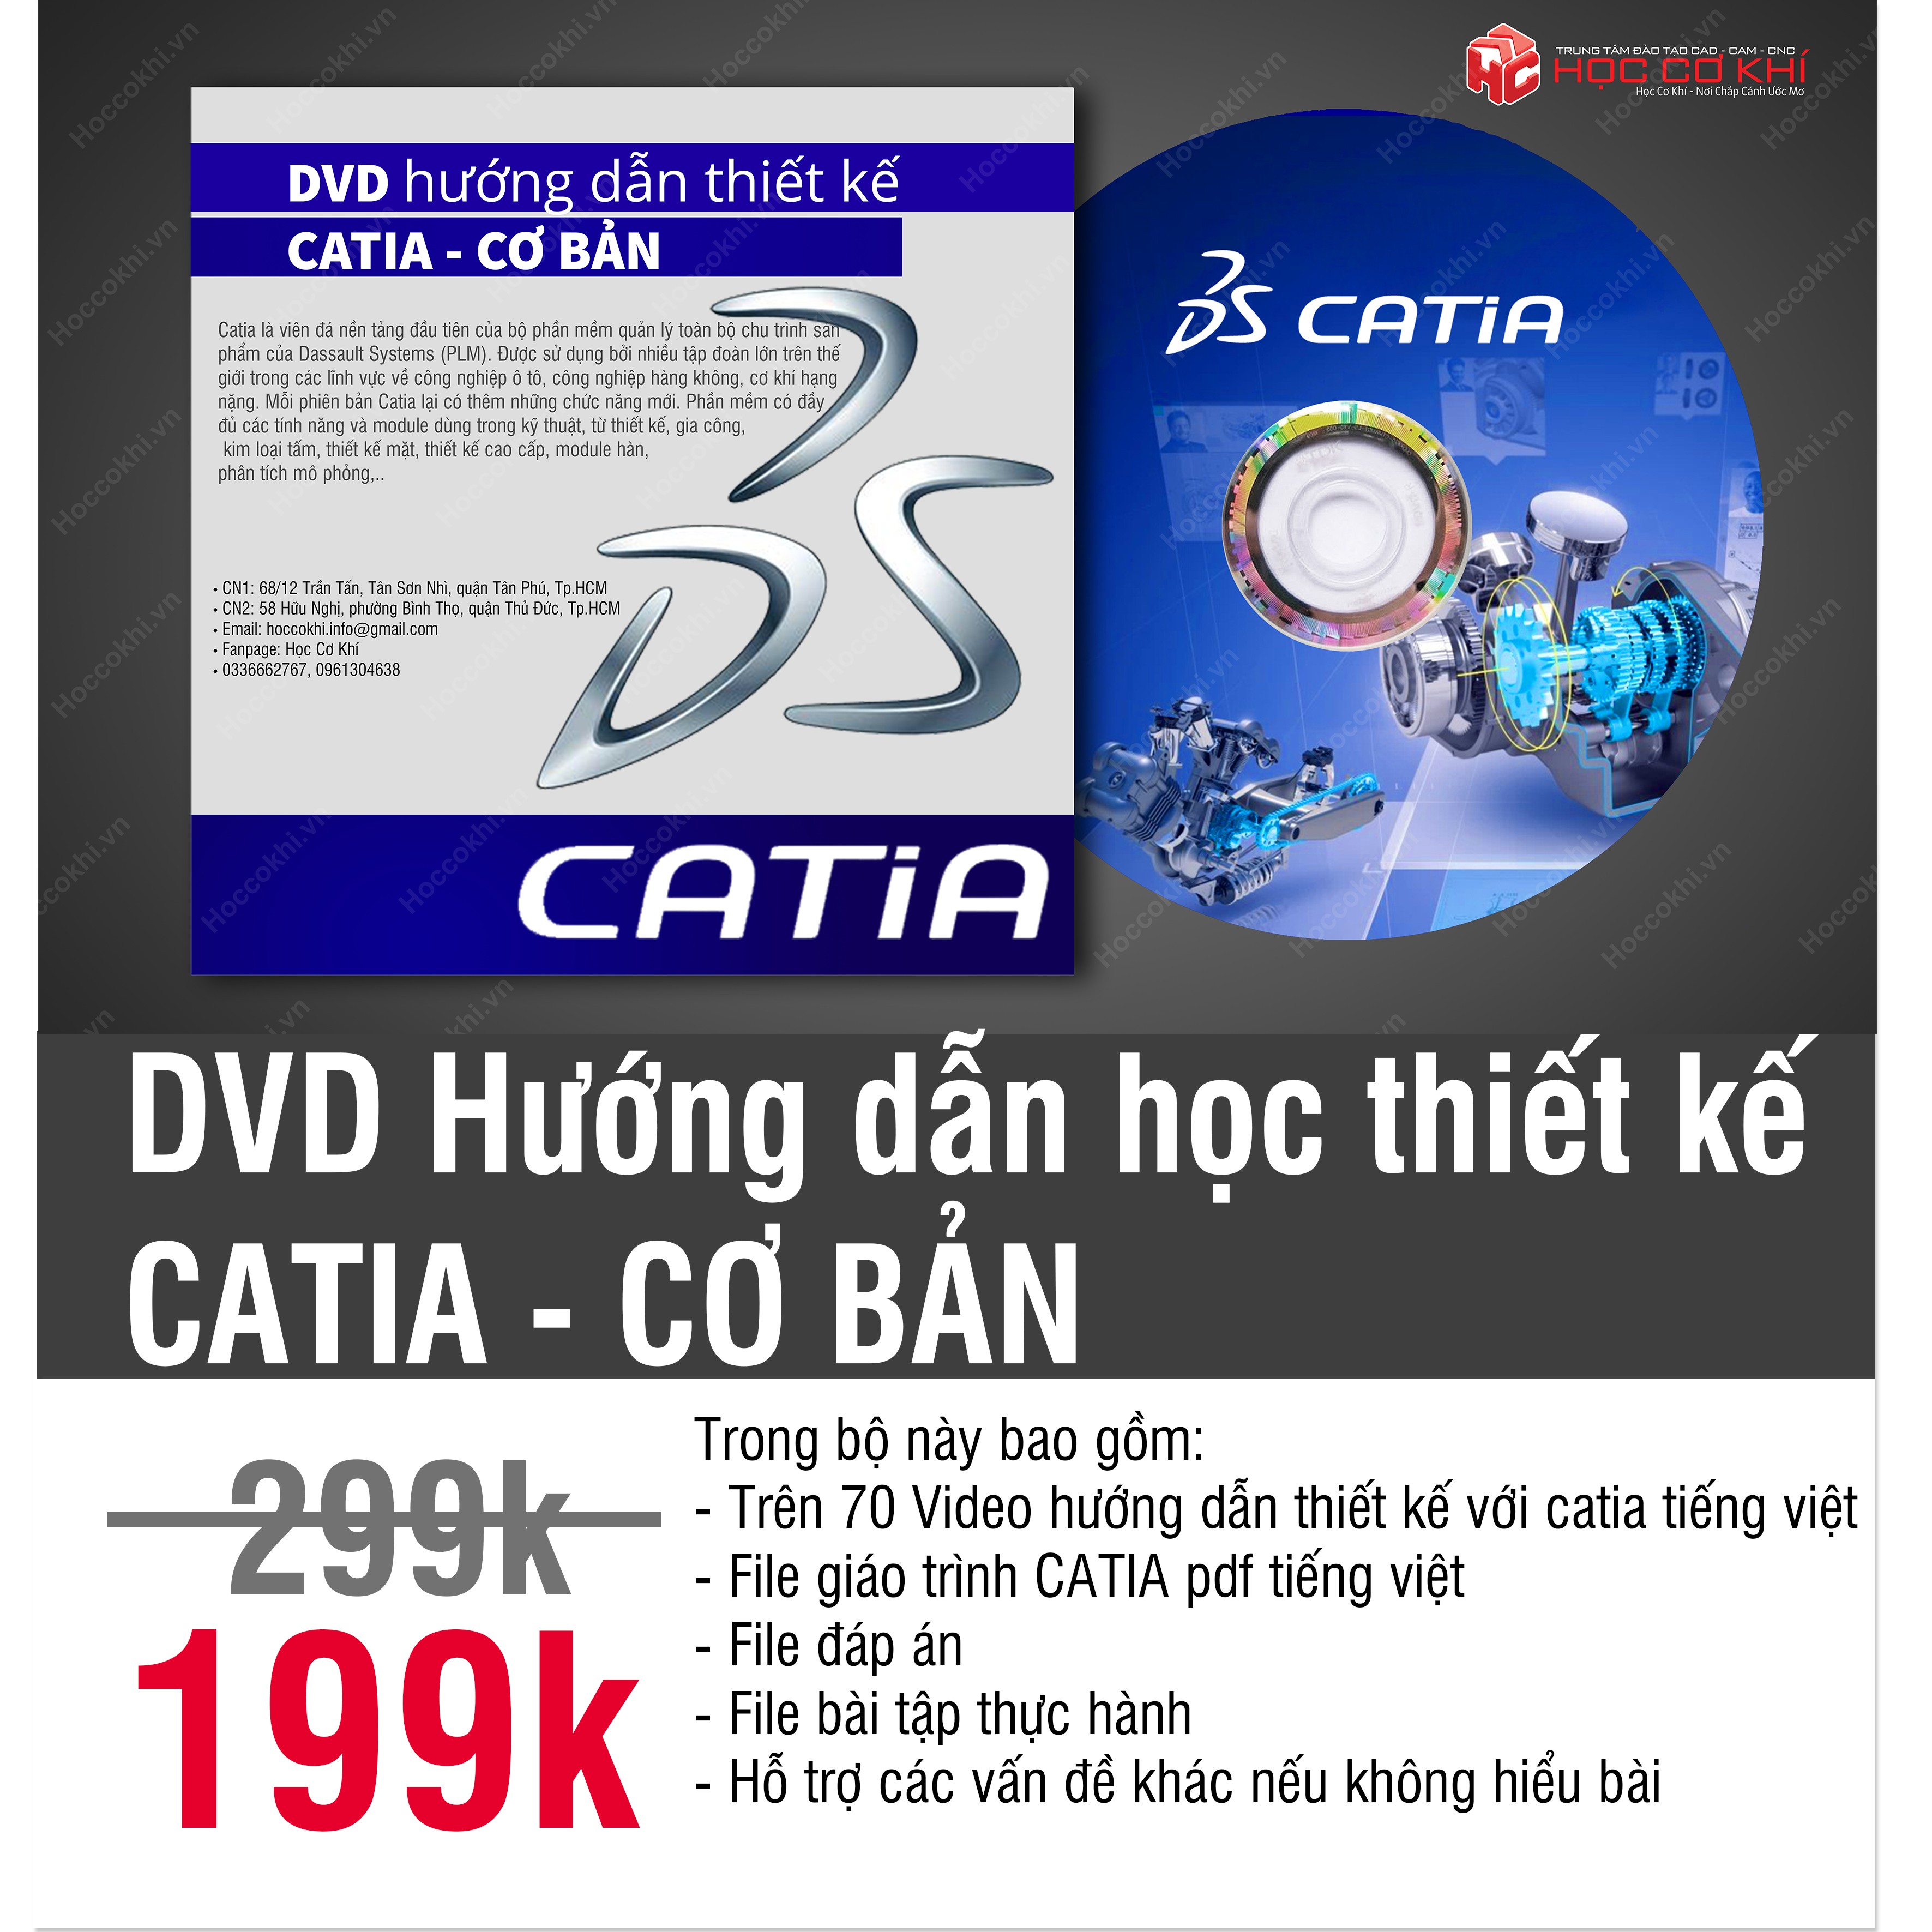 DVD hướng dẫn học thiết kế Catia - CƠ BẢN